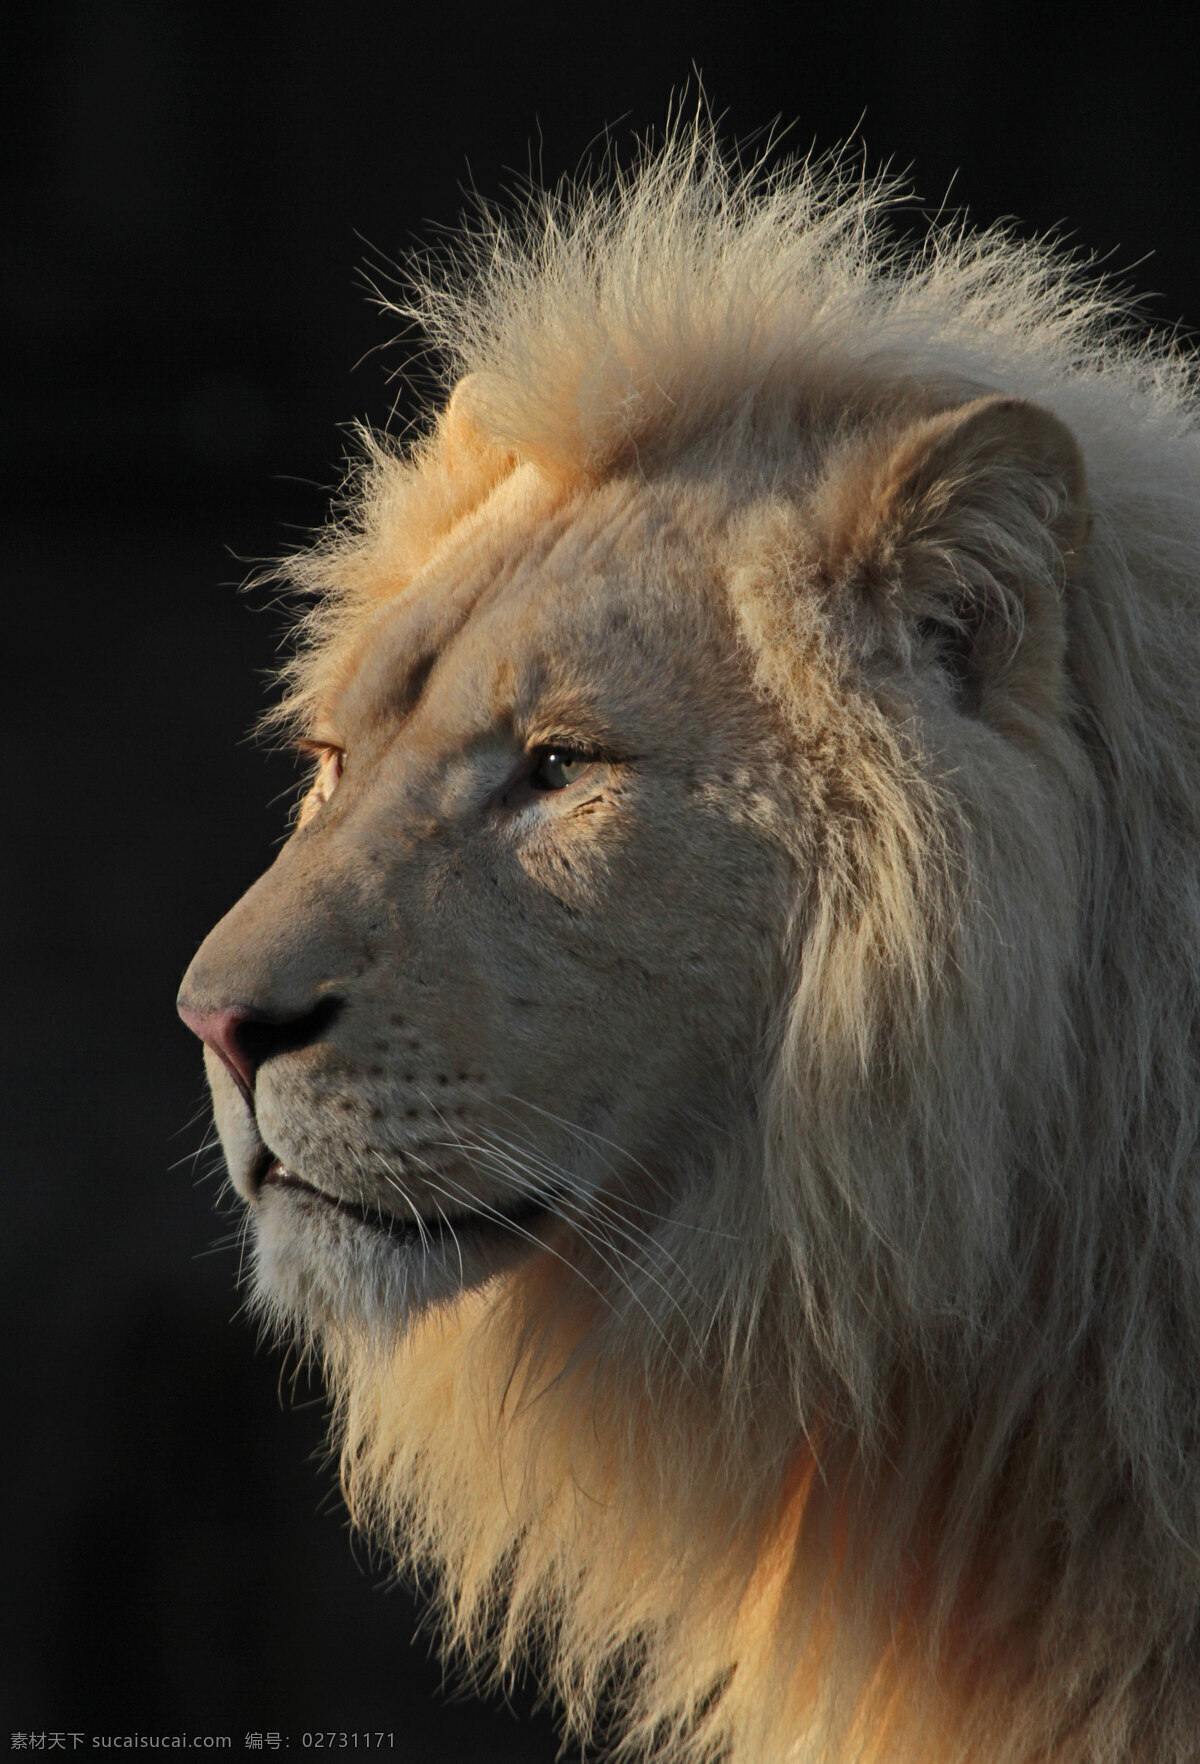 狮子 雄狮 狮 野兽 野生 动物 生物 海报 背景 高清 生物世界 野生动物